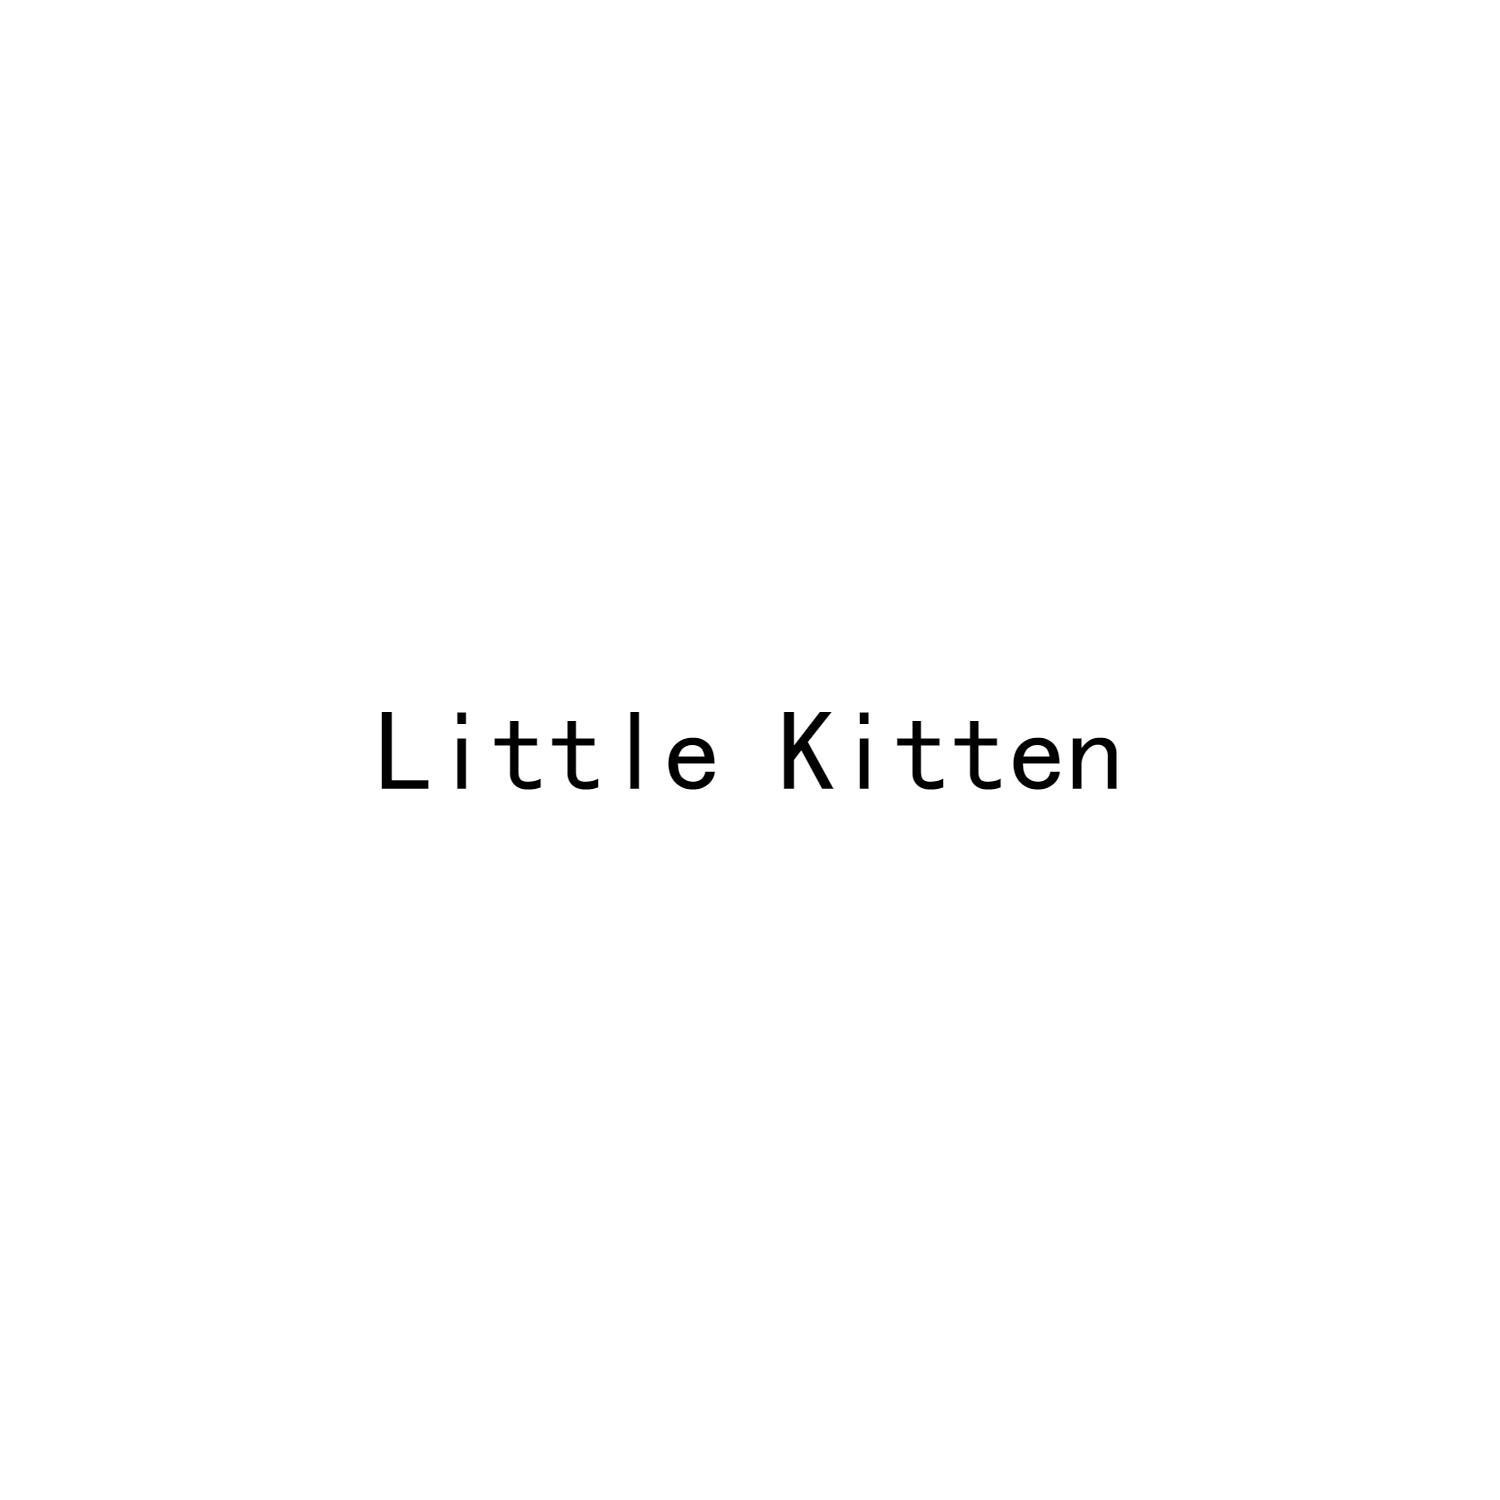 LITTLE KITTEN